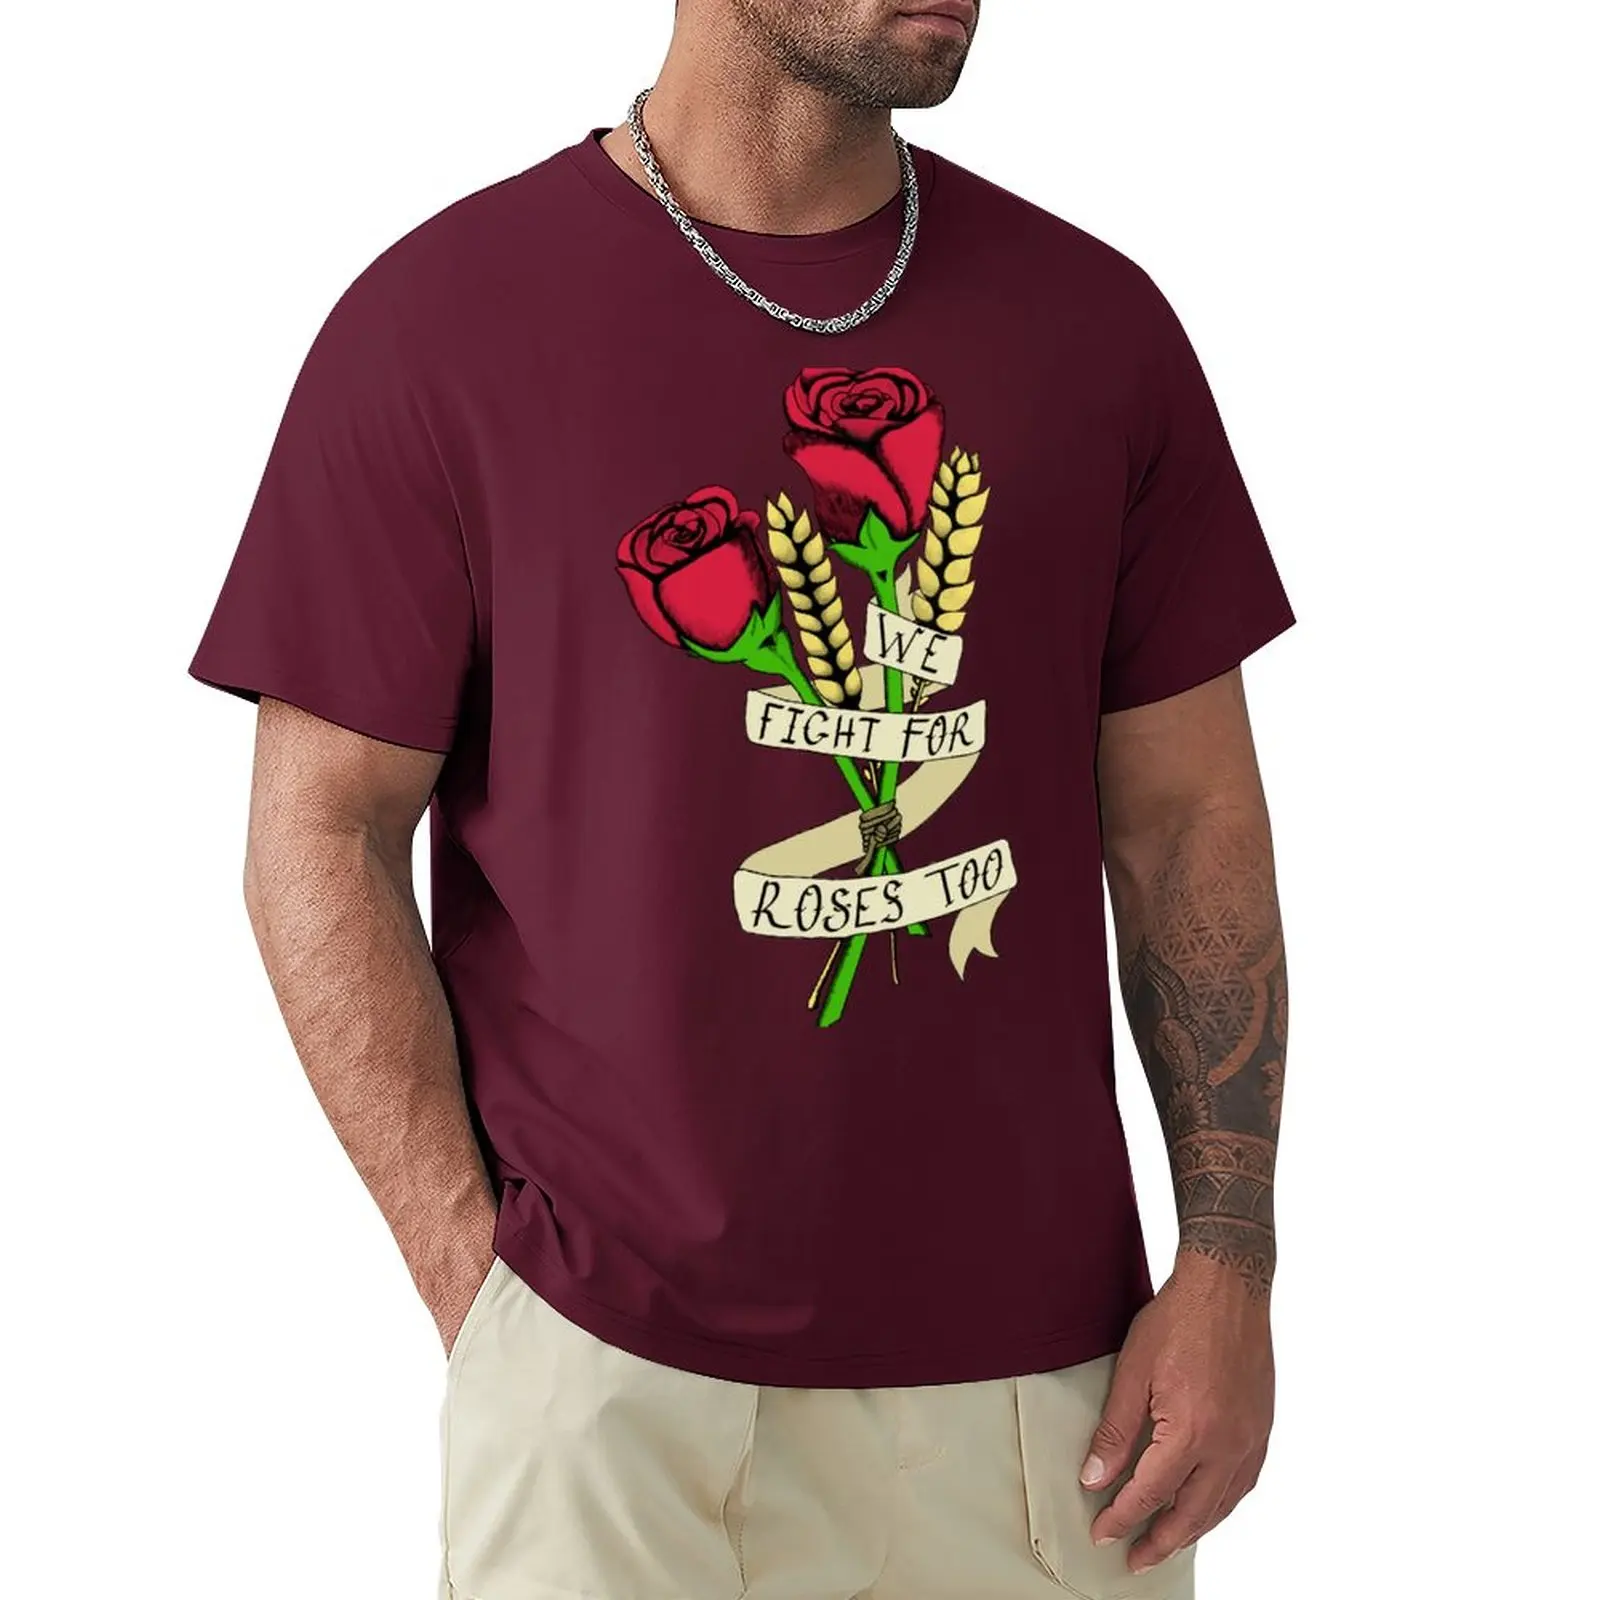 Тениска с хляб и рози (цветна), празни тениски, тениски големи размери, забавни тениски, мъжки дрехи